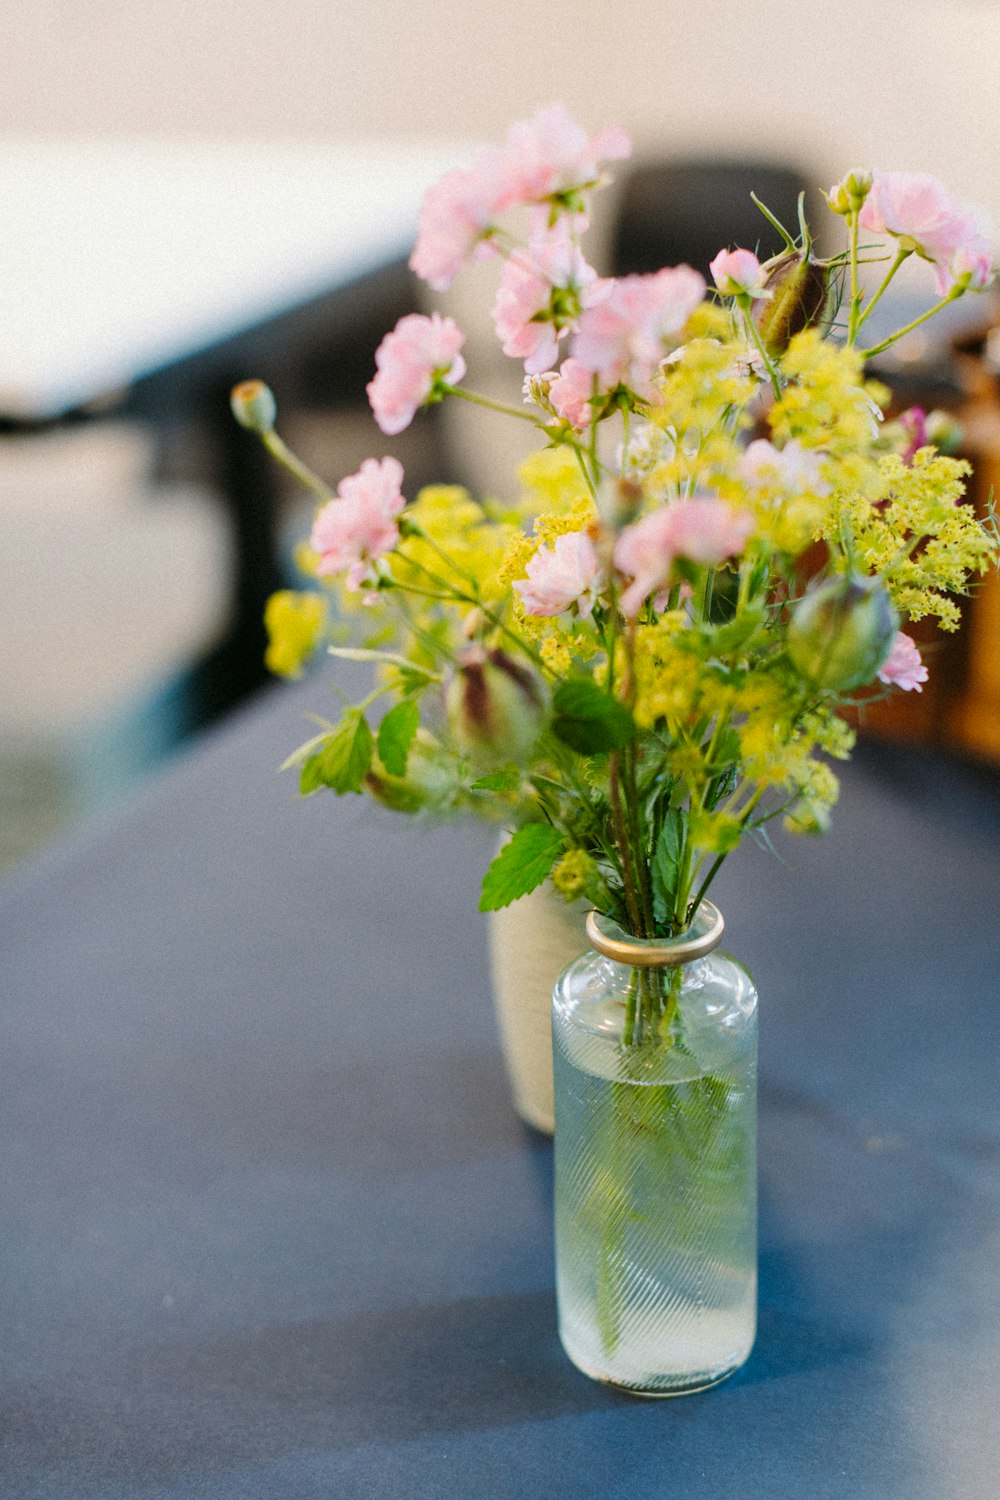 テーブルの上に花でいっぱいの花瓶